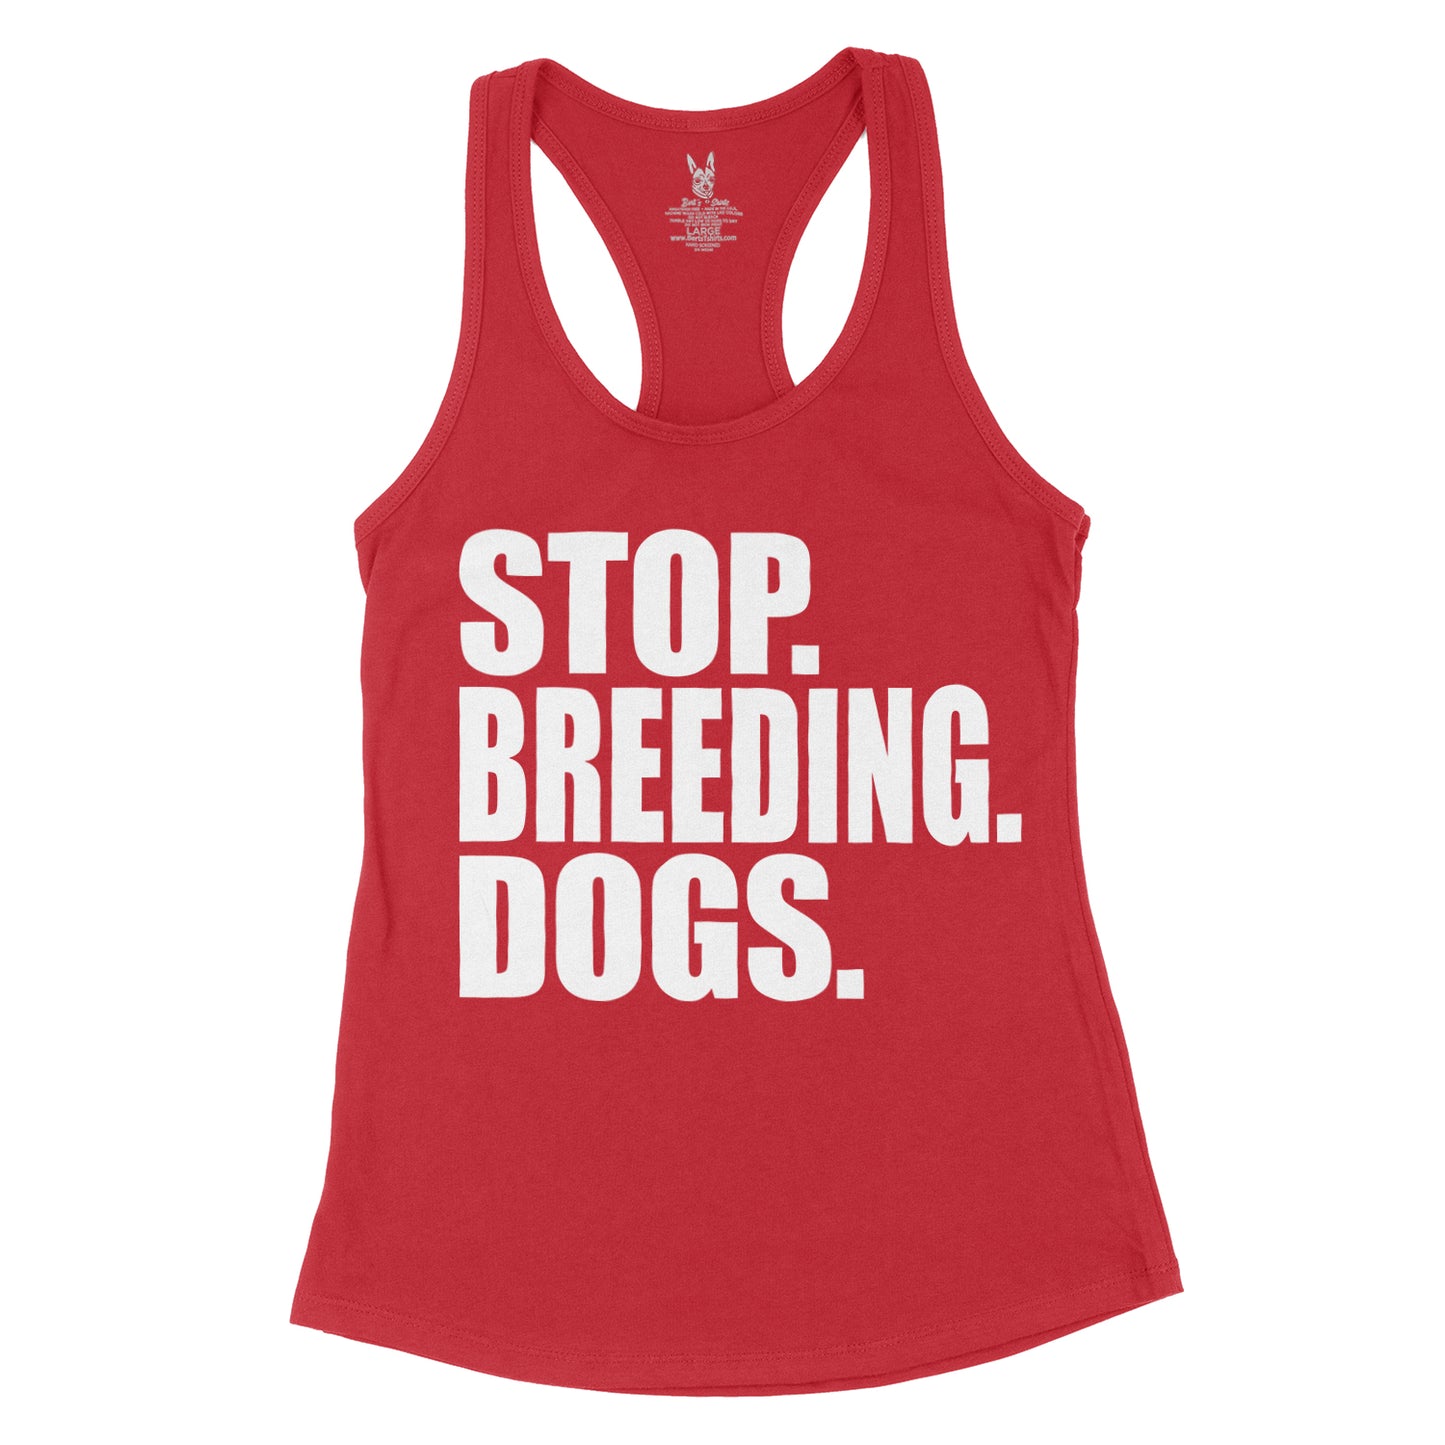 Women's Stop Breeding Dogs Tank Top